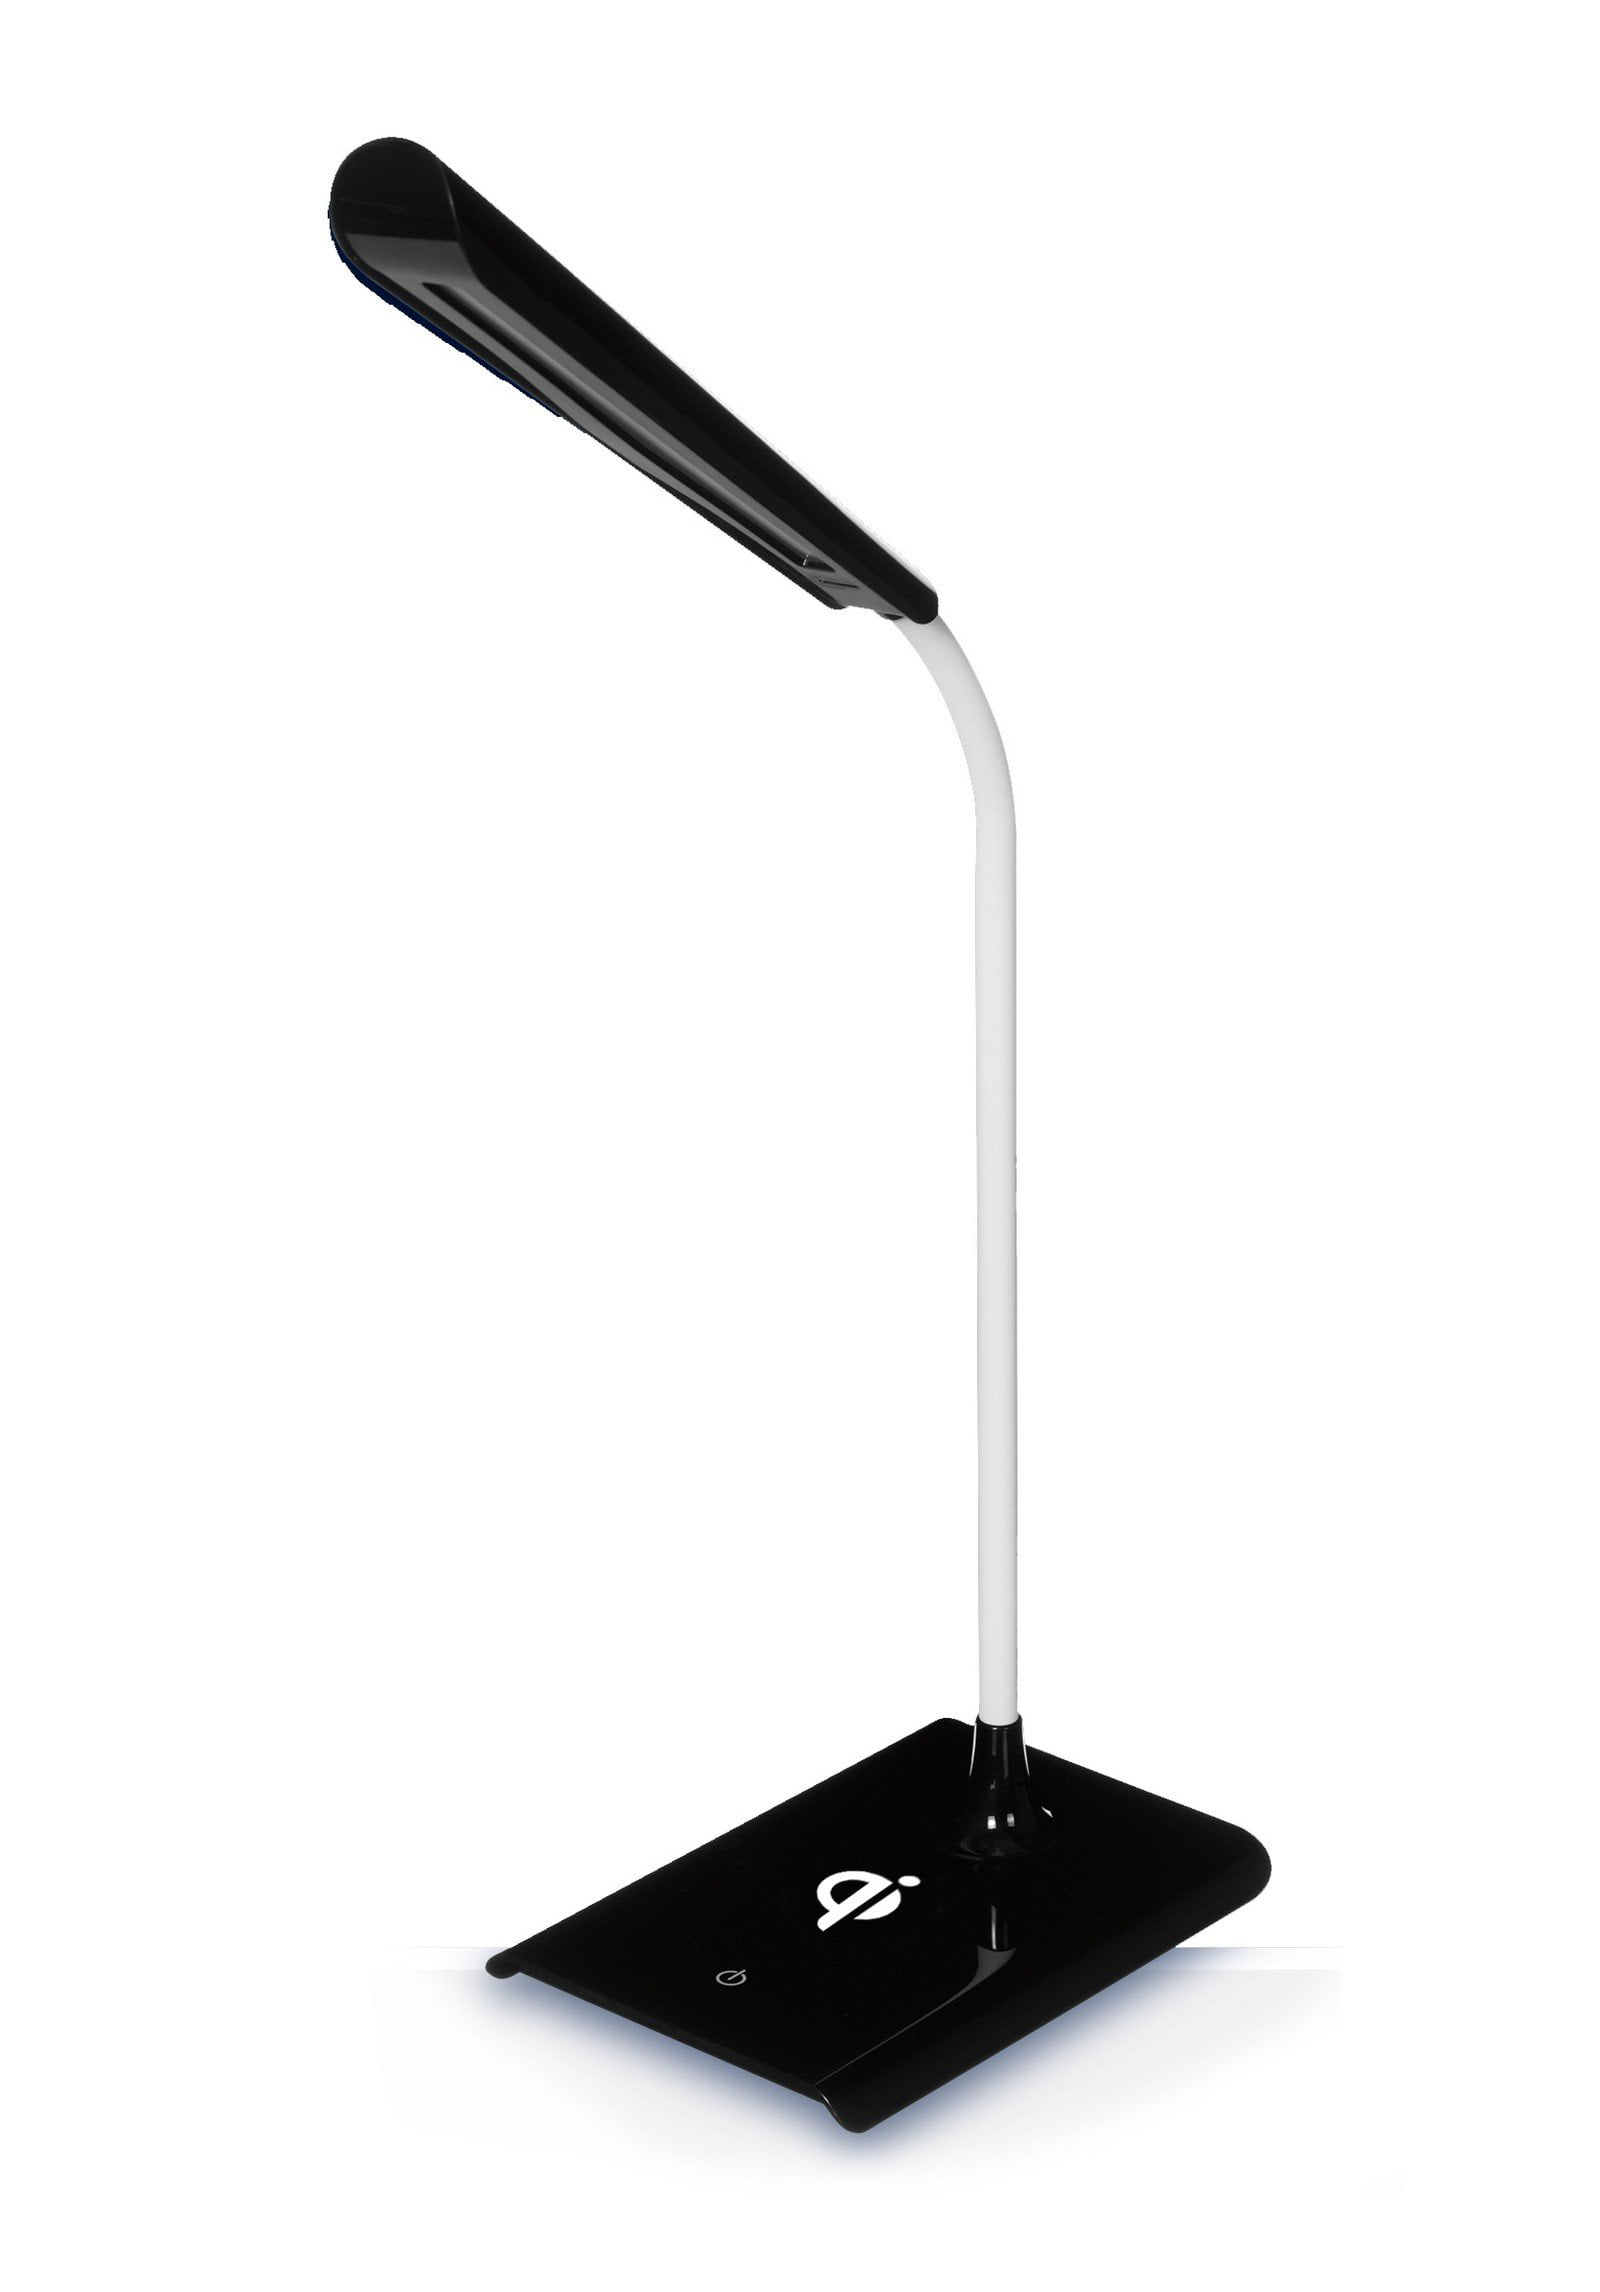 Details about   1 Pc Sense Light Adjustable Bedside Lamp for Decor Bedroom Home 